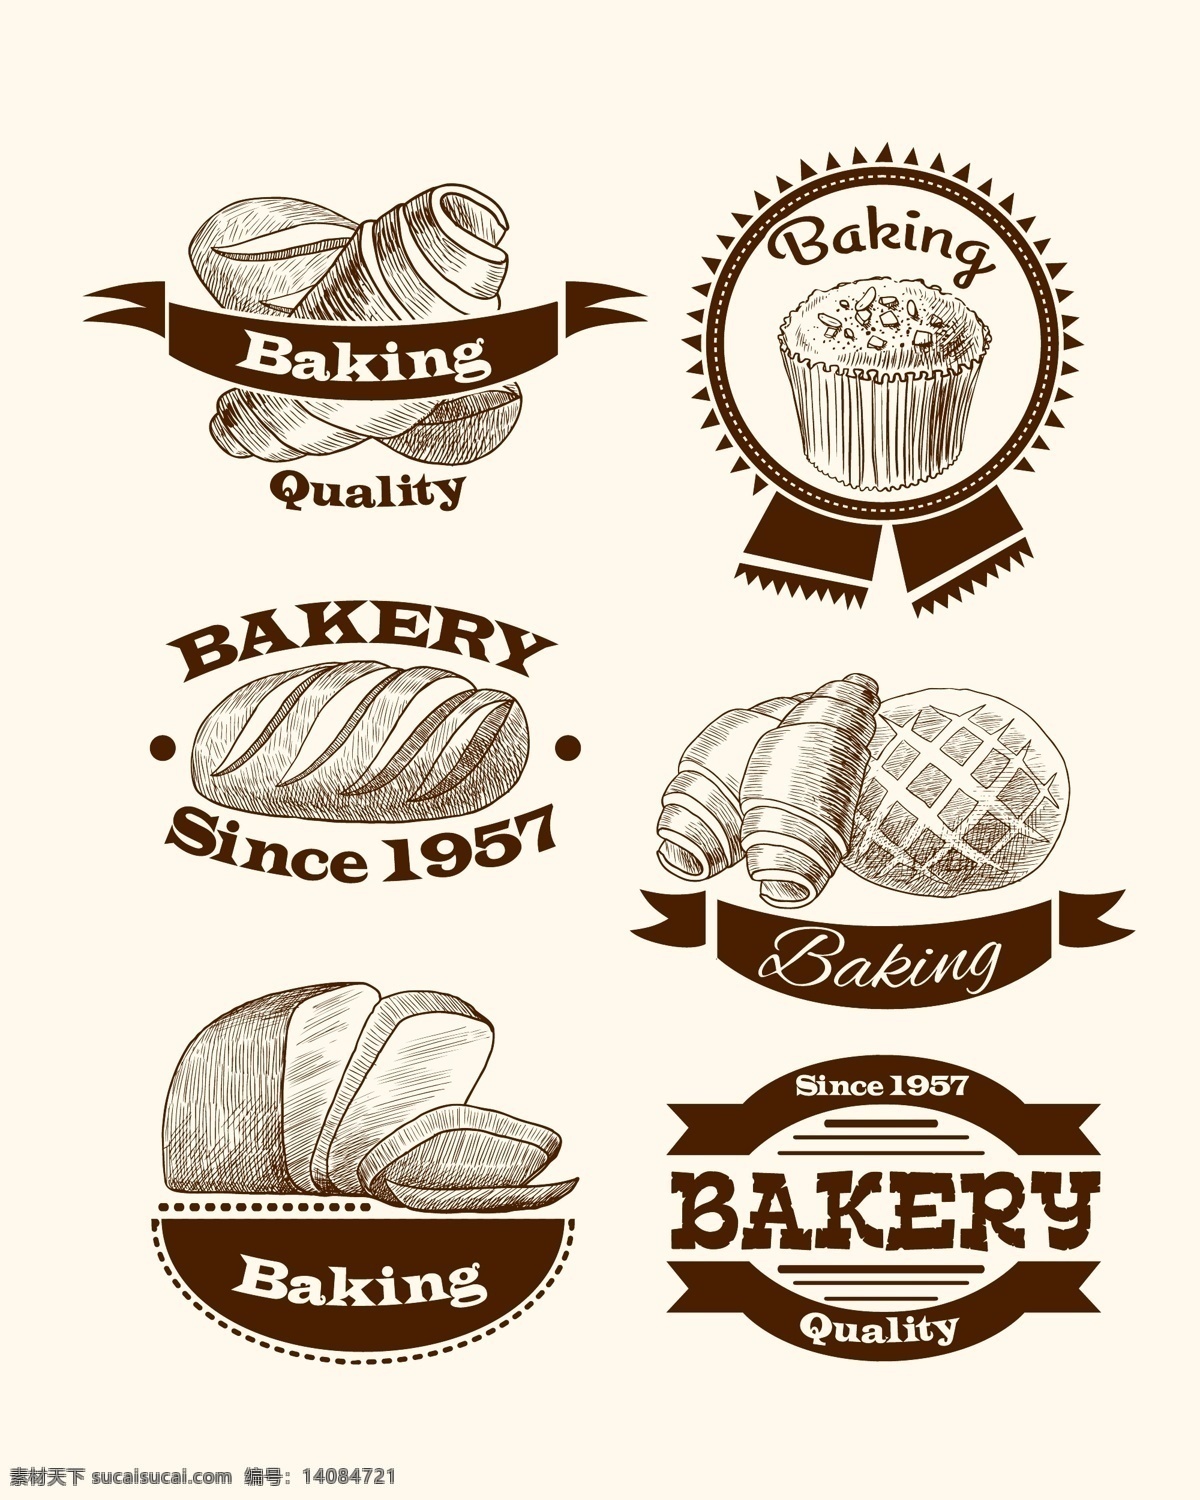 各种 面包 标志 蛋糕 小图标 飘带 英文字 圆形 国外风情 年份 做旧 淡黄色 切片面包 菠萝包 手绘 生活百科 餐饮美食